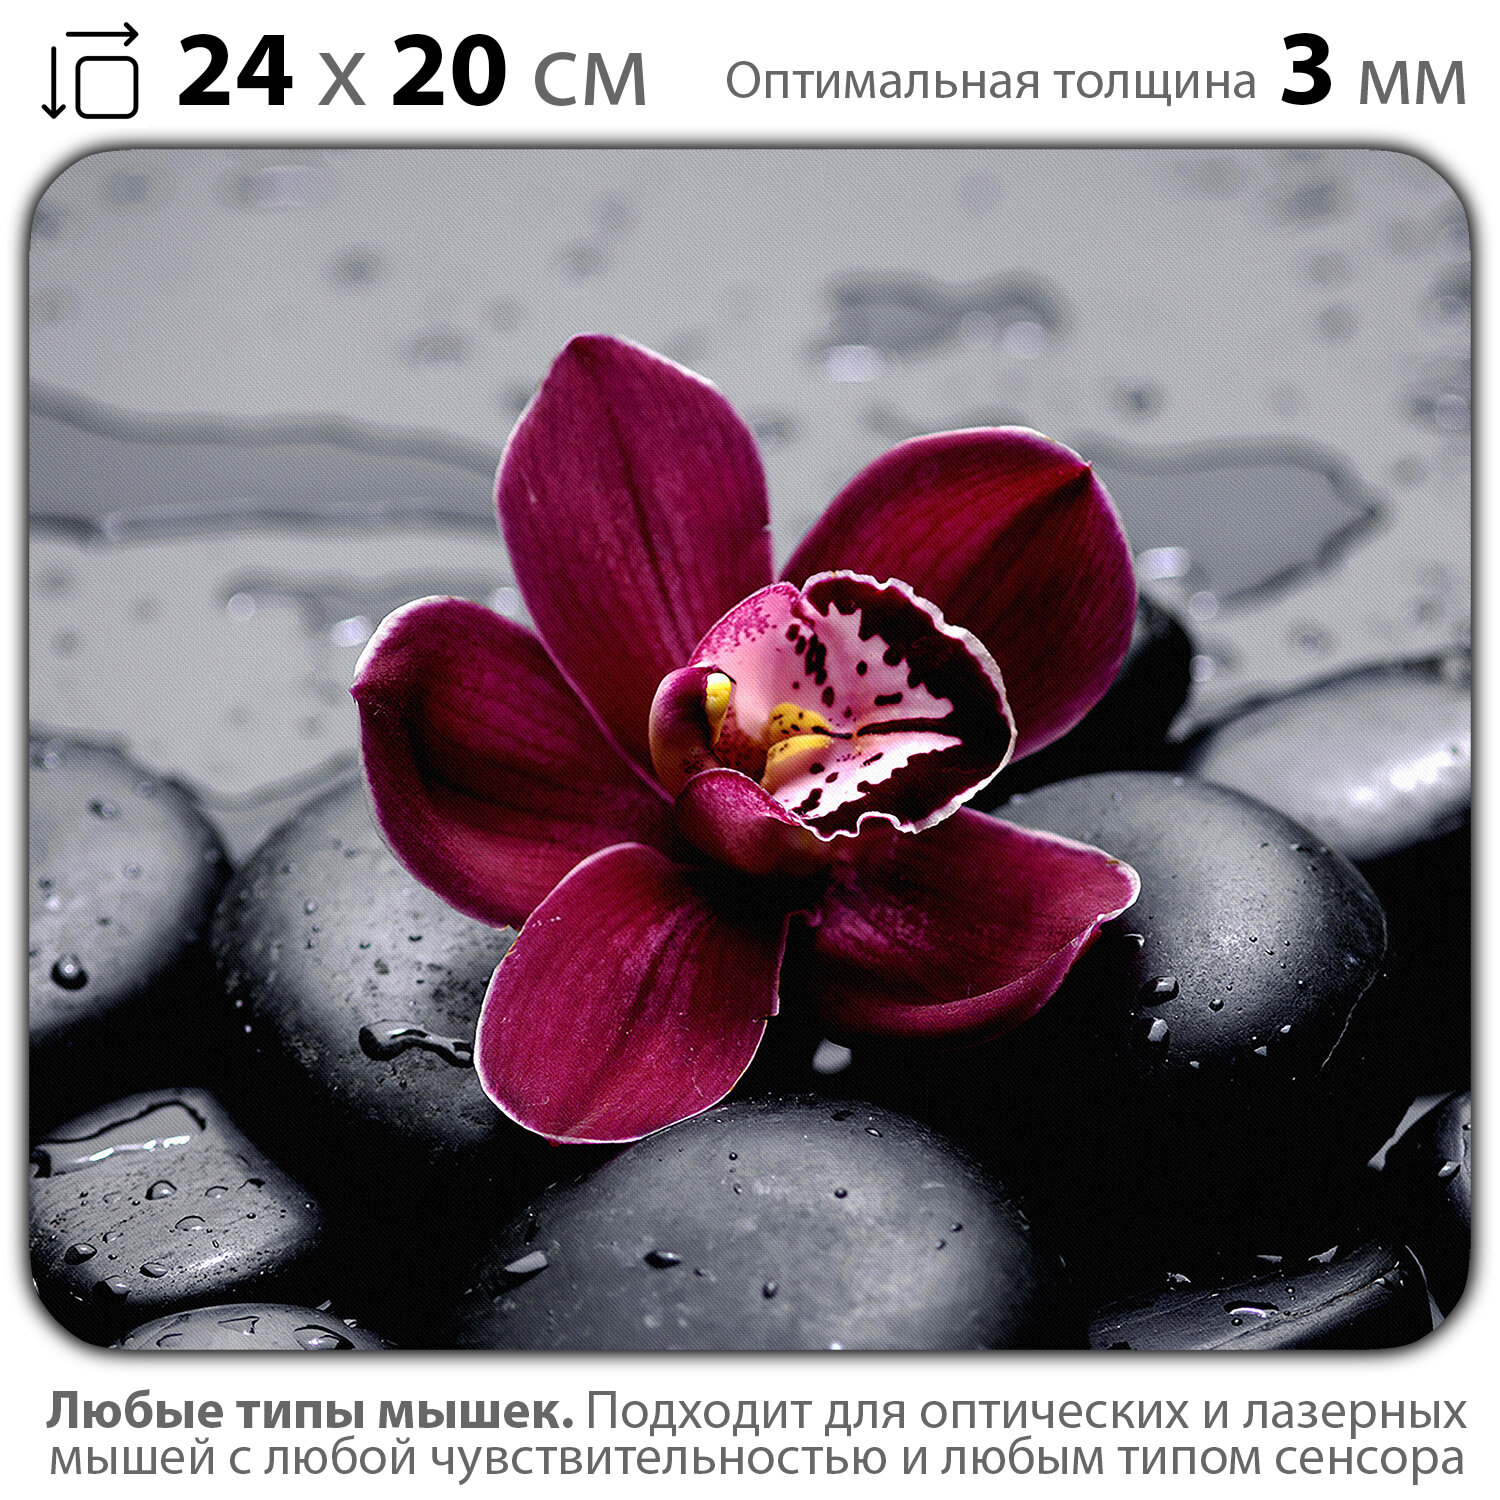 Коврик для мыши "Орхидея на камнях" (24 x 20 см x 3 мм)